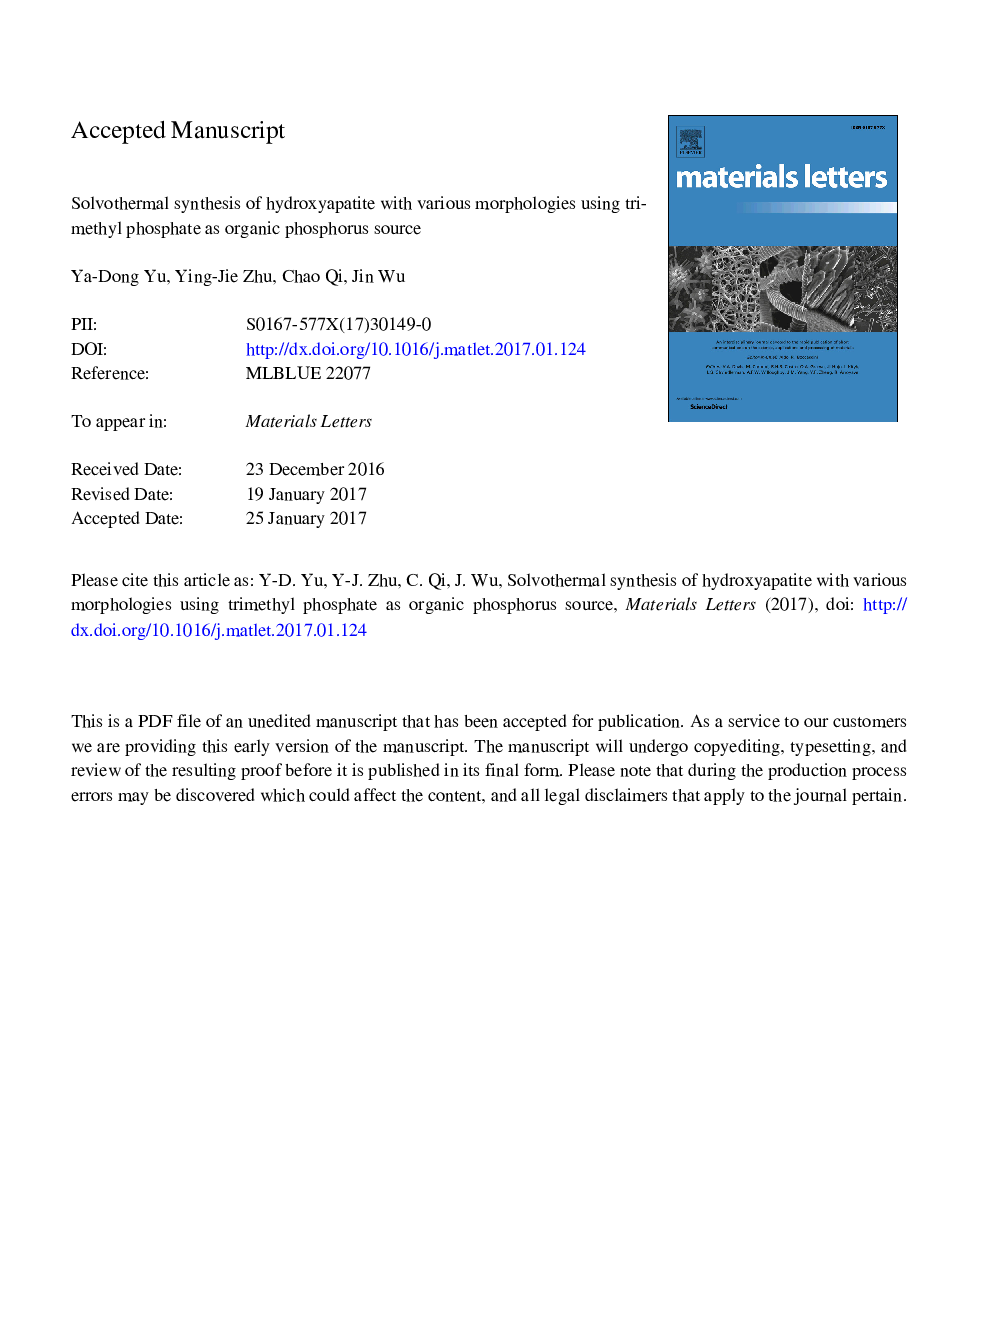 سنتز سولوترومالی هیدروکسی آپاتیت با مورفولوژی های مختلف با استفاده از تریمیم فسفات به عنوان منبع فسفر آلی 